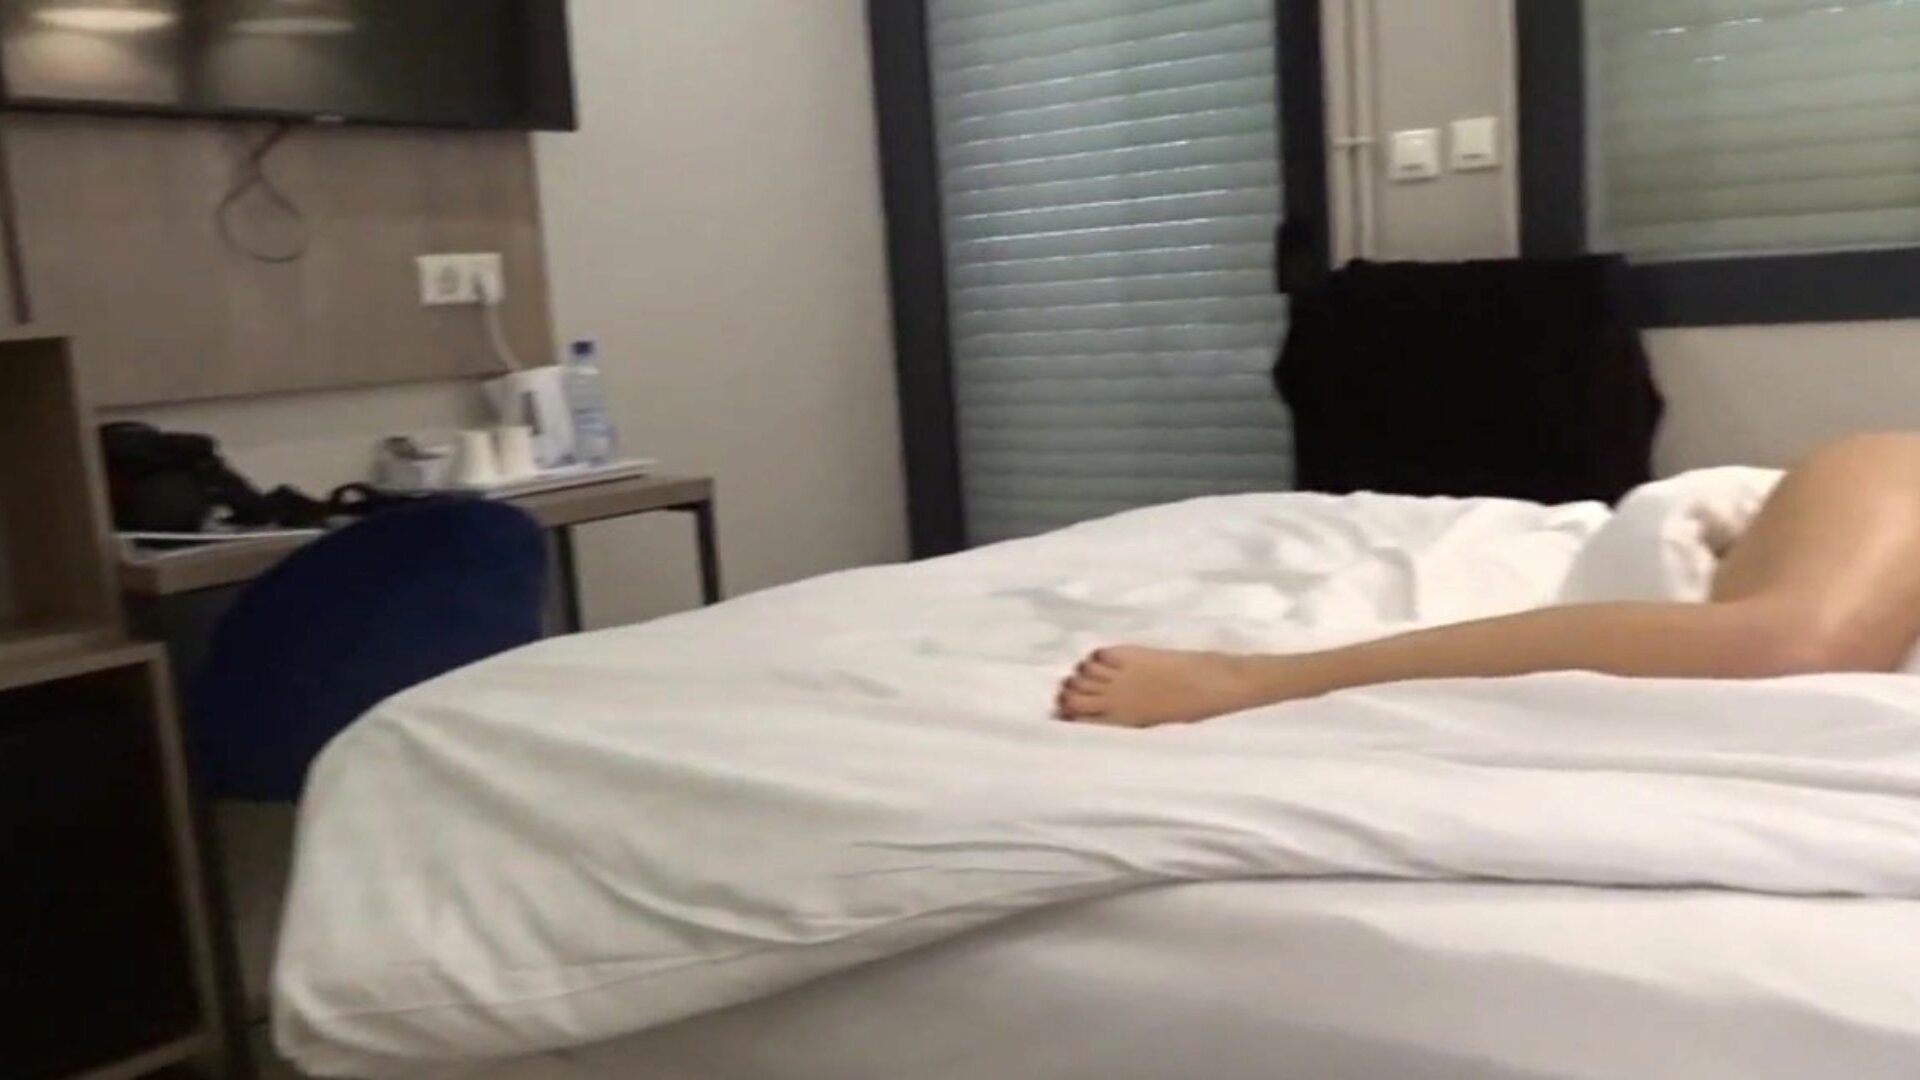 carla-c голая в отеле, видео, где я раздеваюсь на кушетке в номере отеля и в ванной